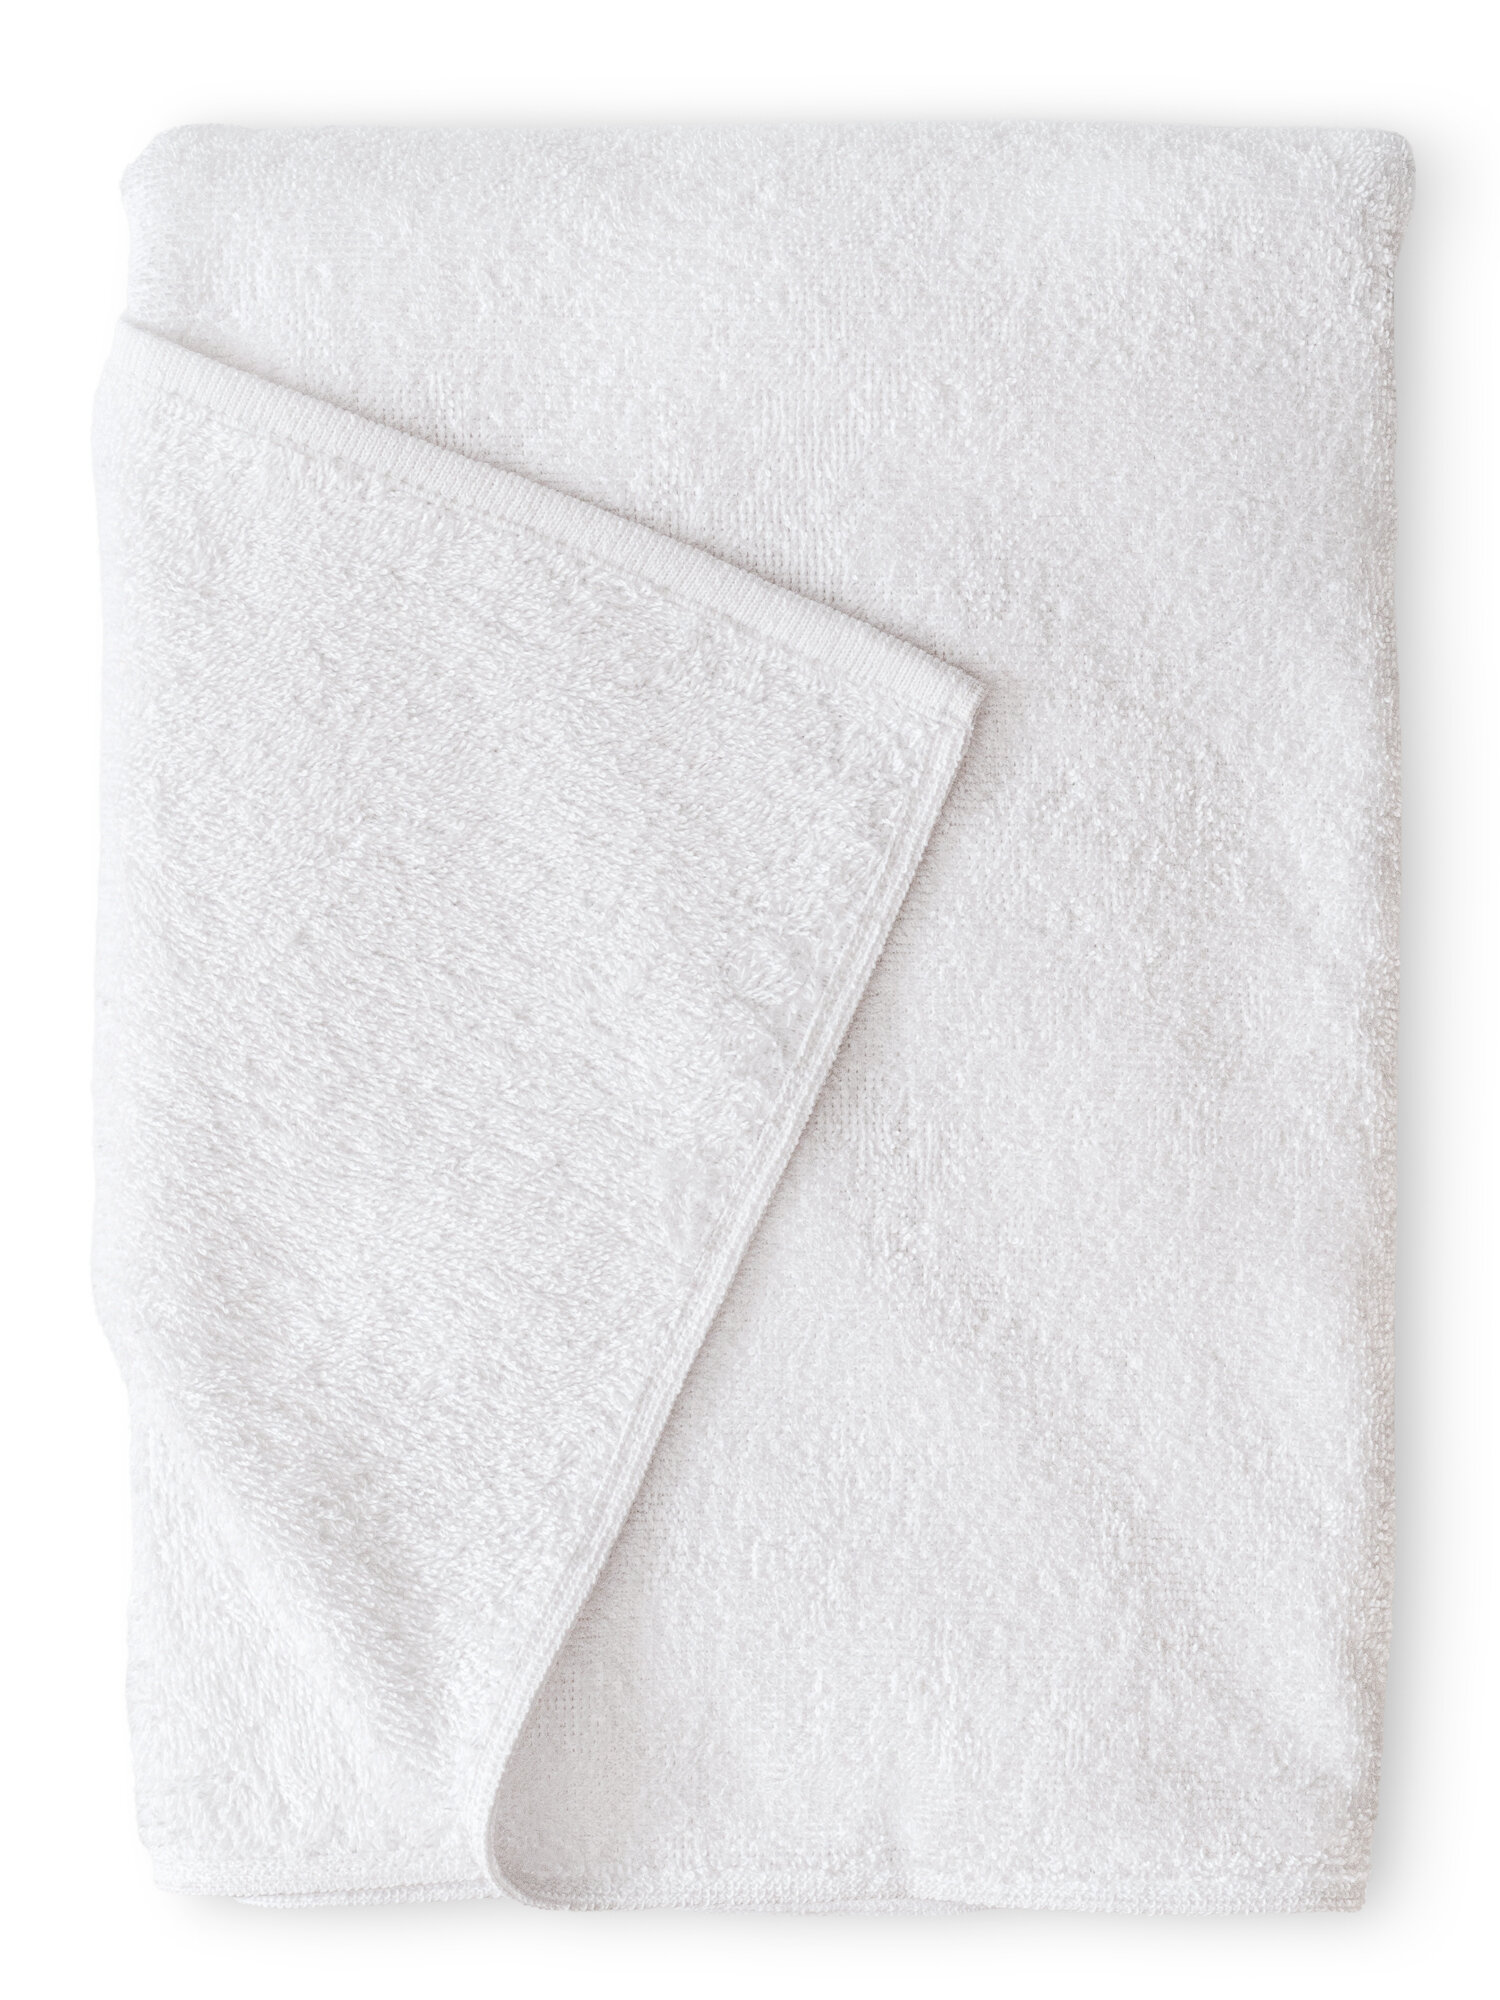 Махровое полотенце 50x100 банное белого цвета terryOne 1 шт. 450 г/м2